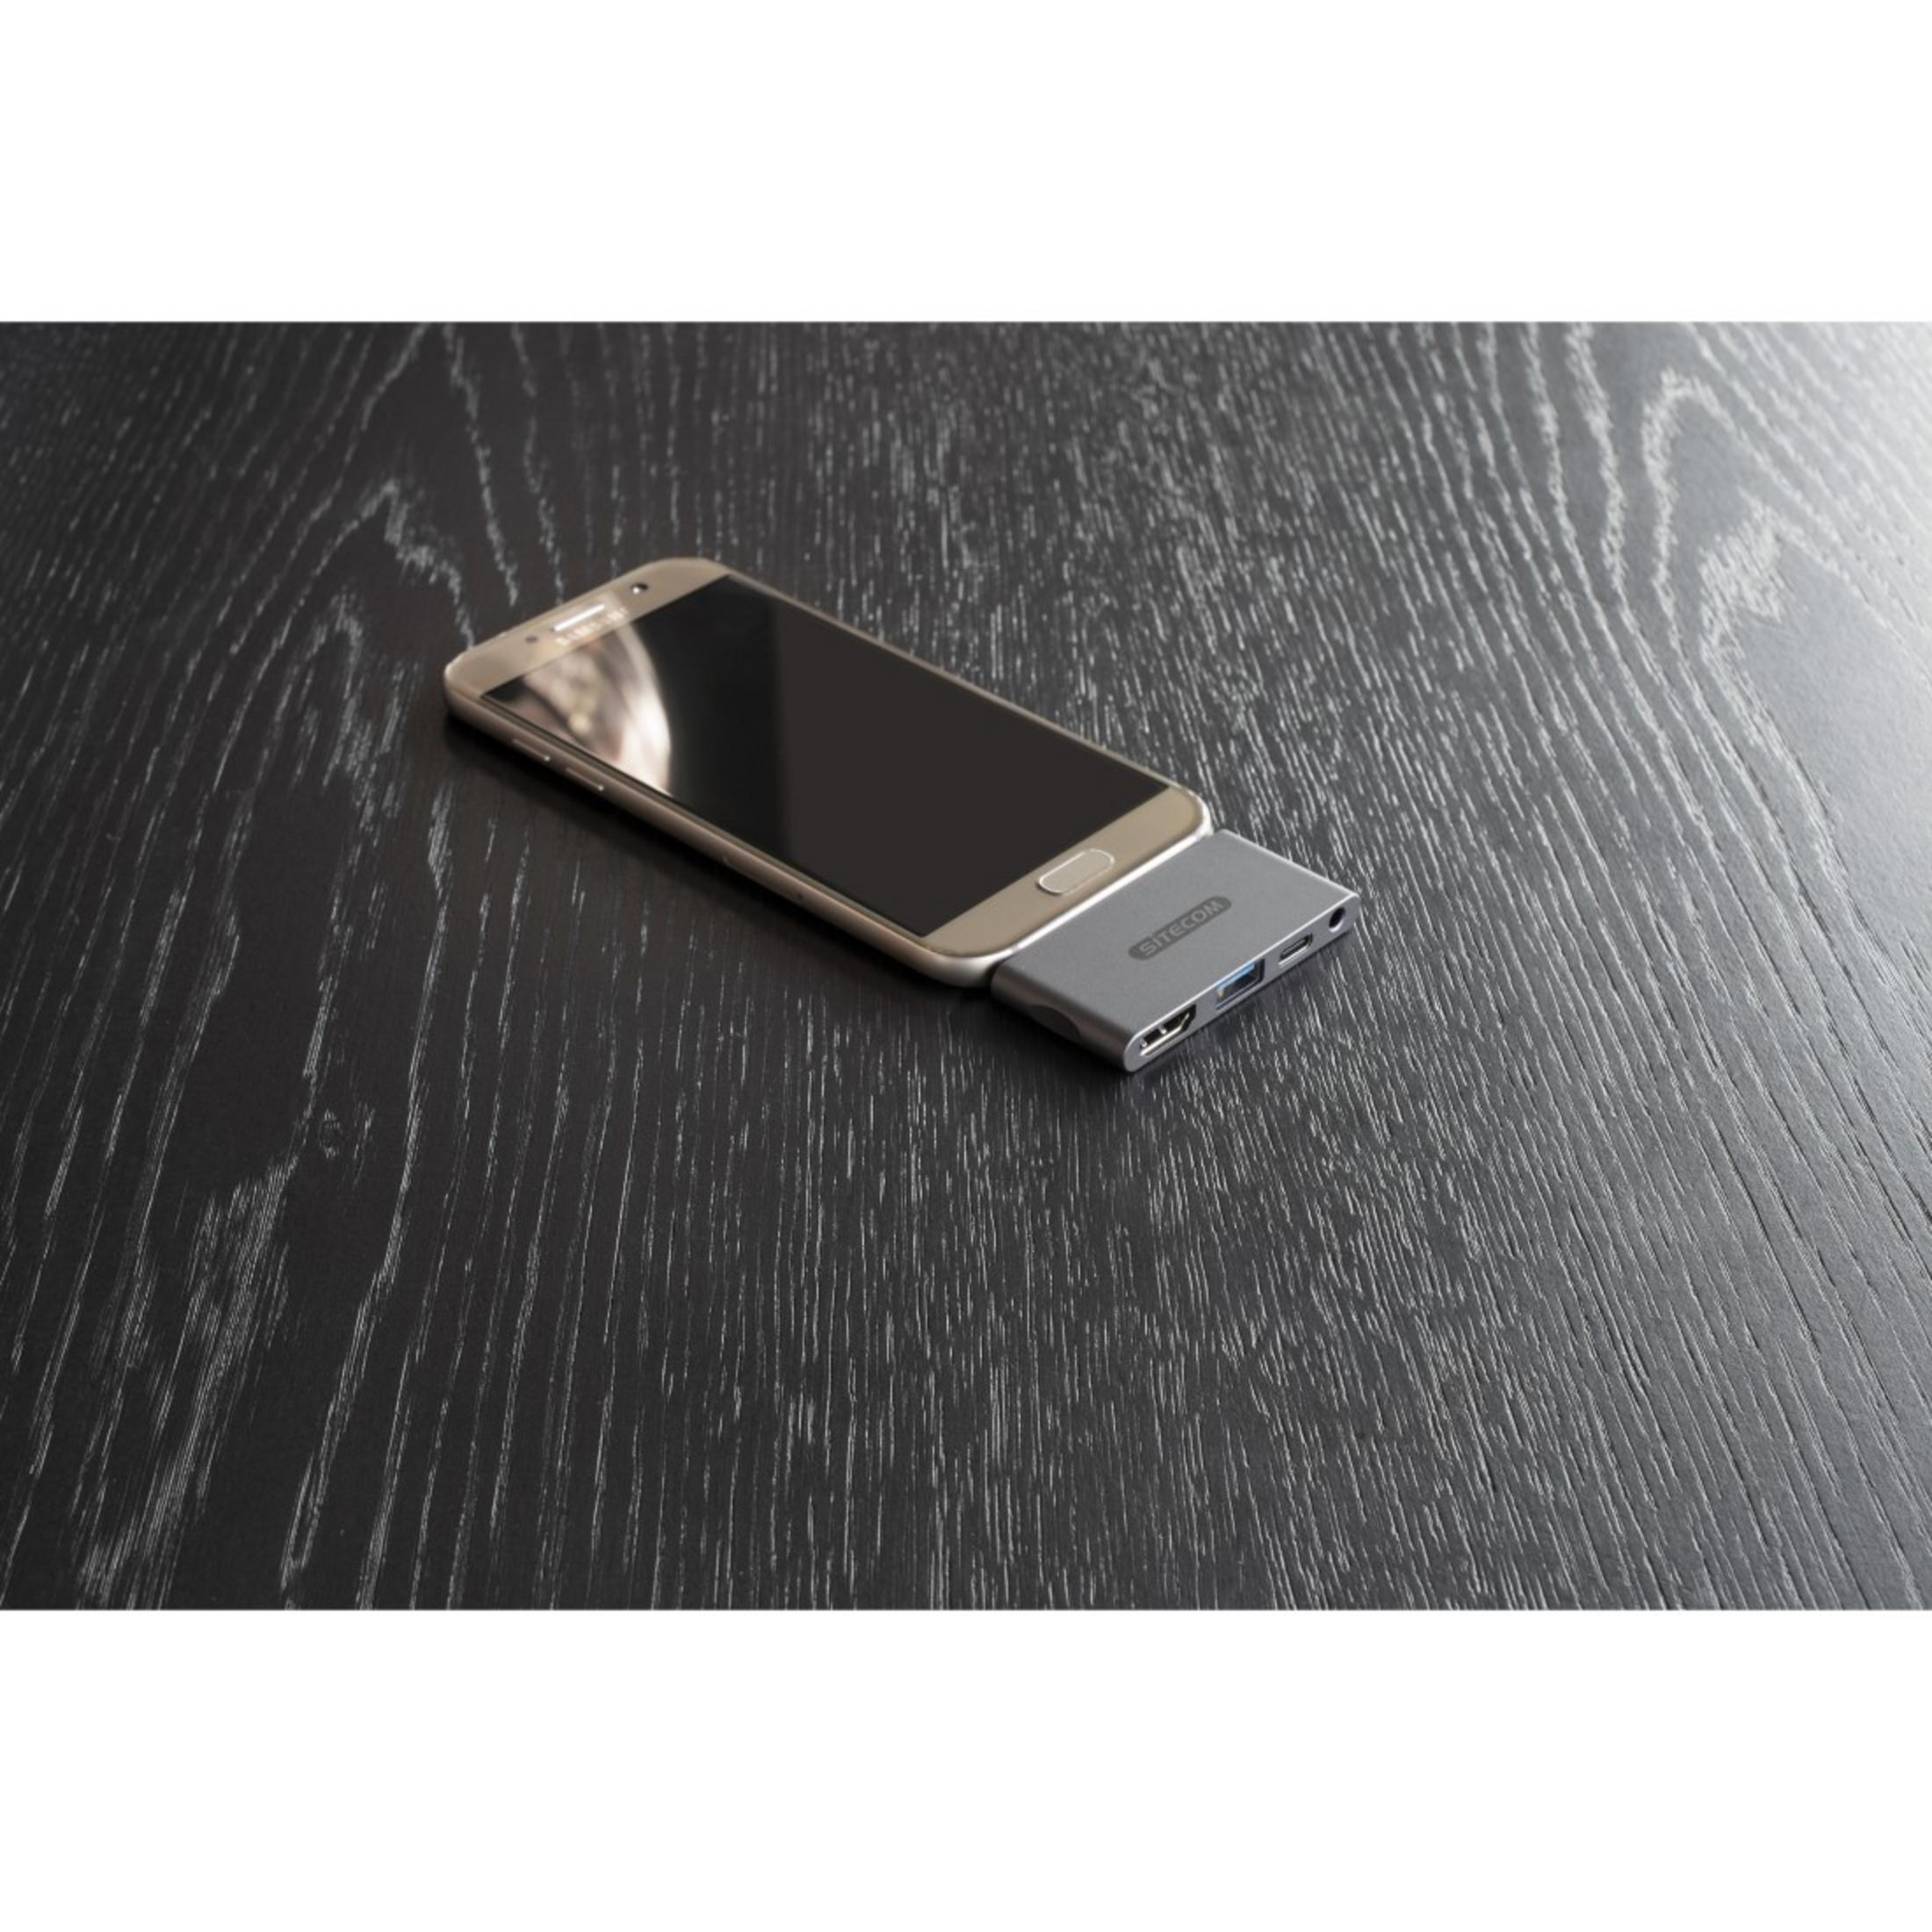 PD SITECOM 3.1 USB USB-C Silber CN-392 Multiport, MOBI MULTI 100W